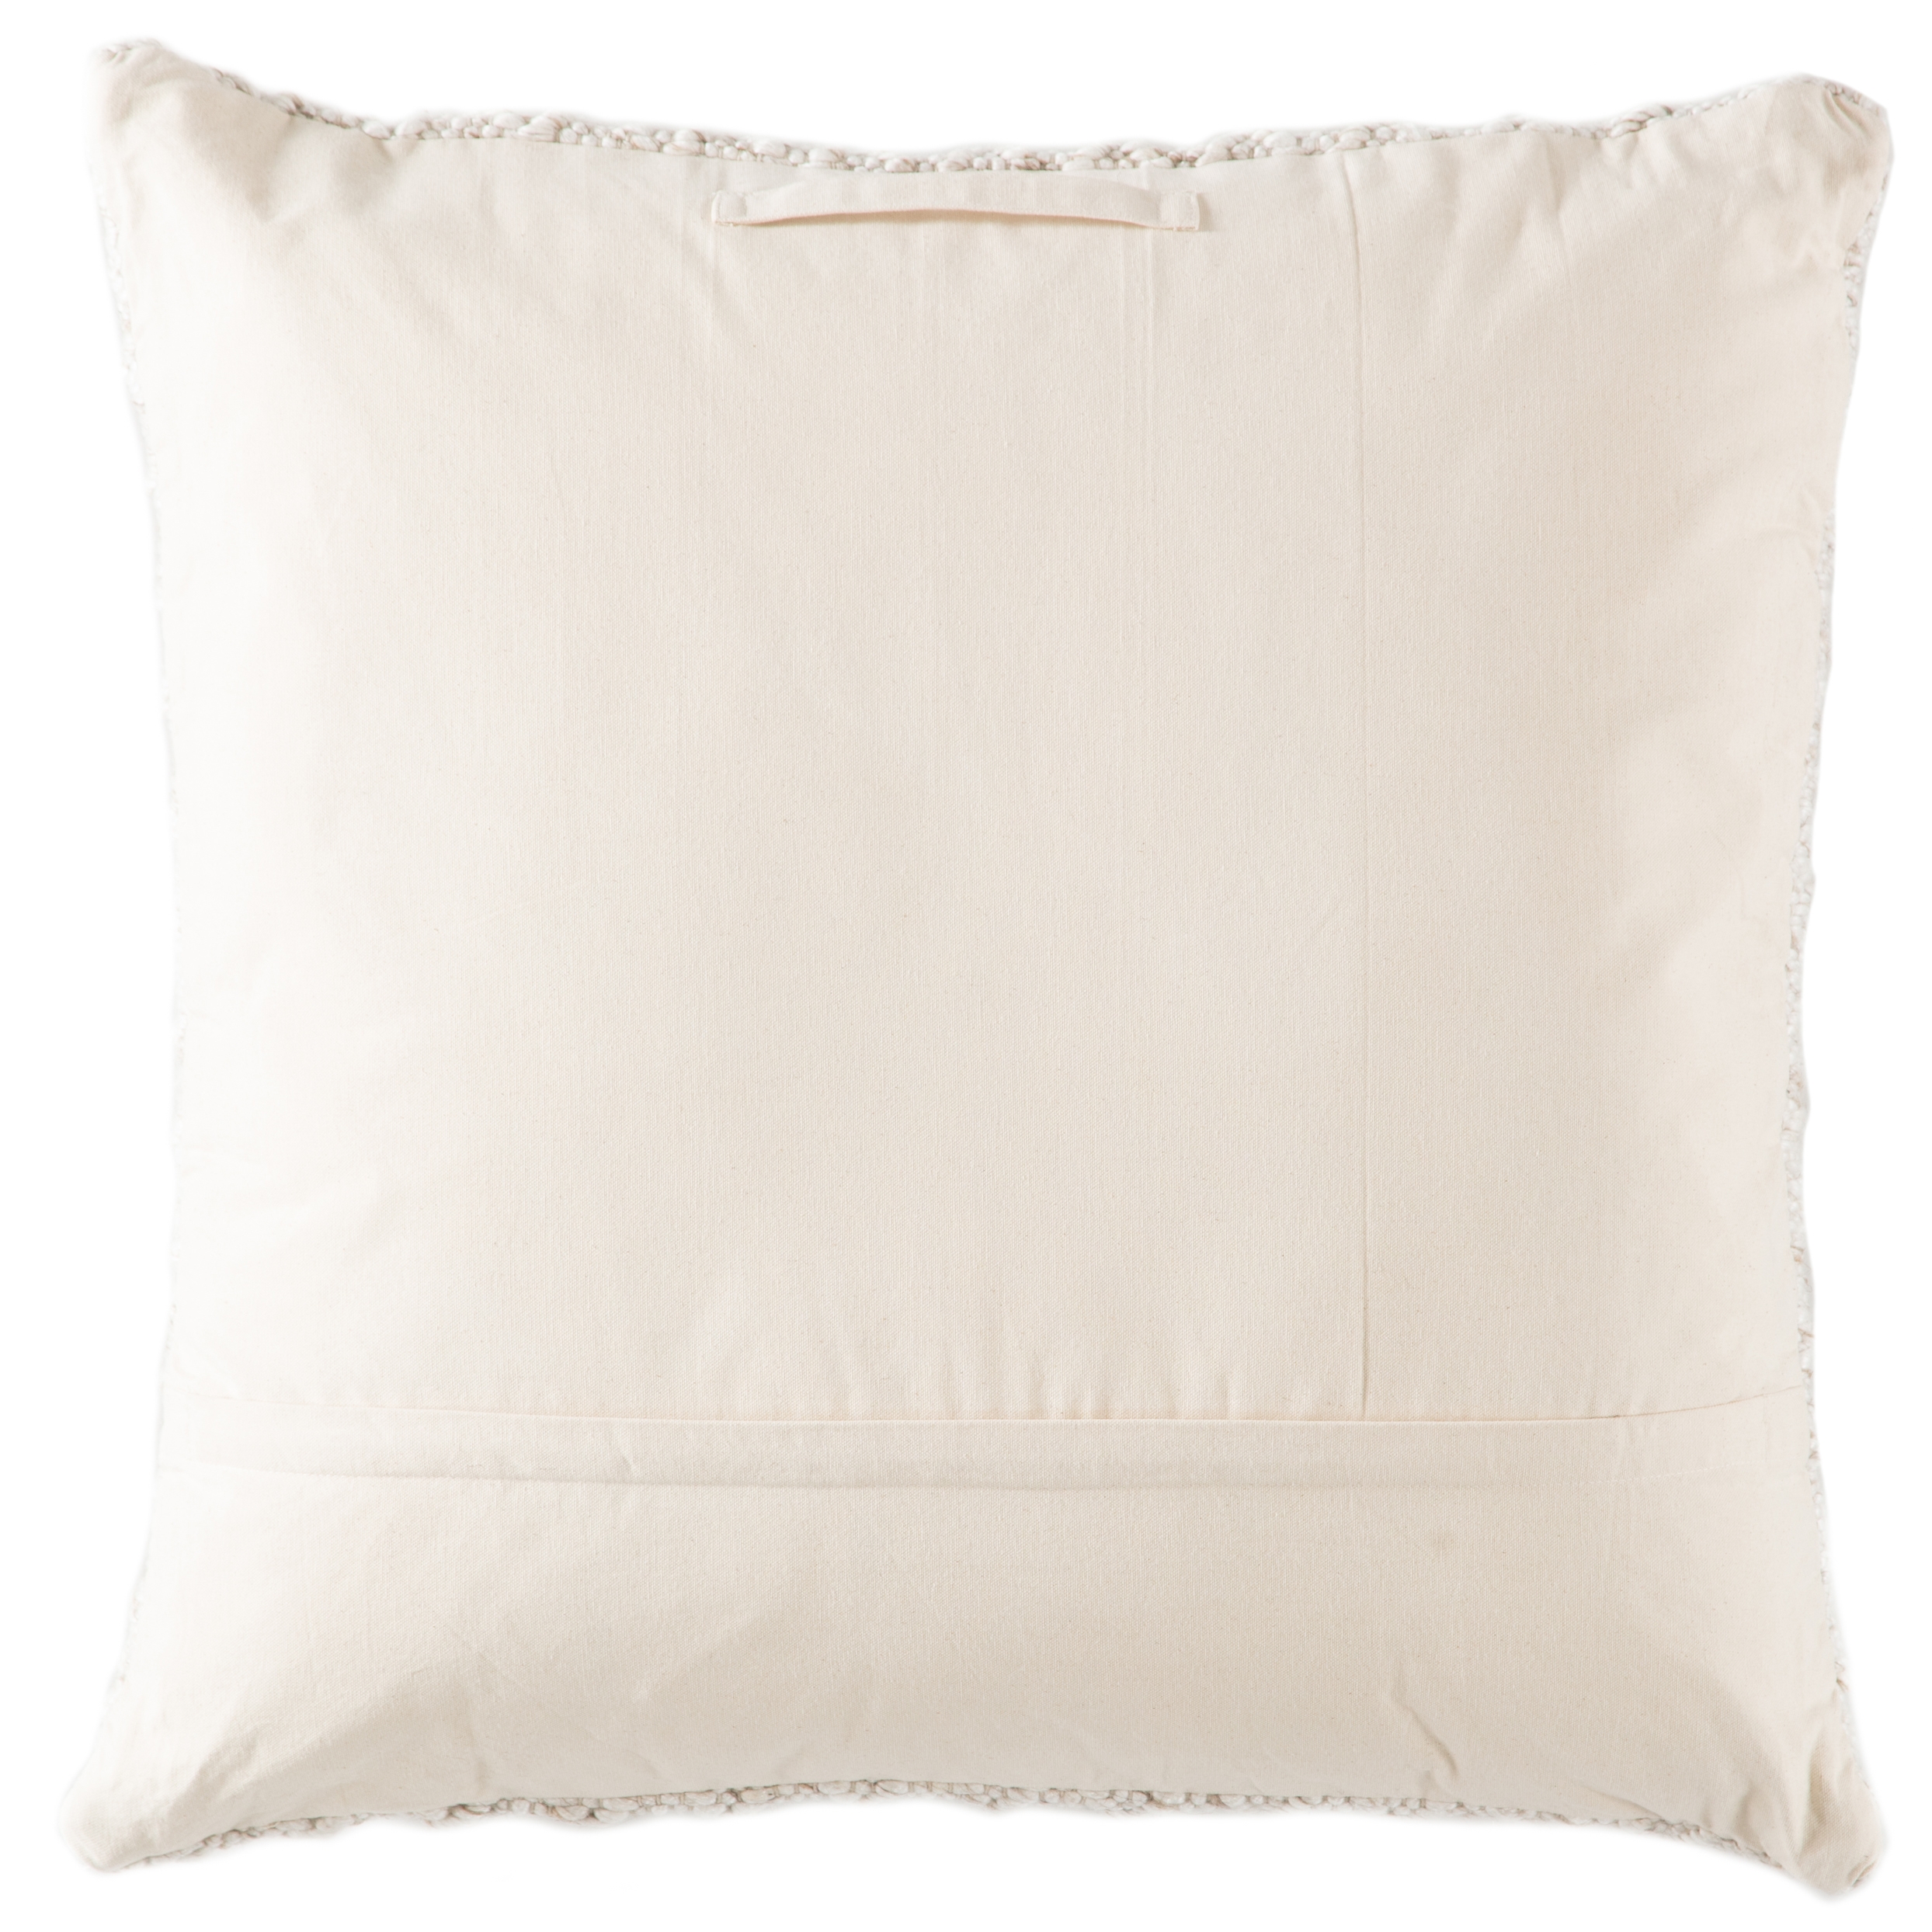 Design (US) Cream 32"X32" Pillow - Image 1